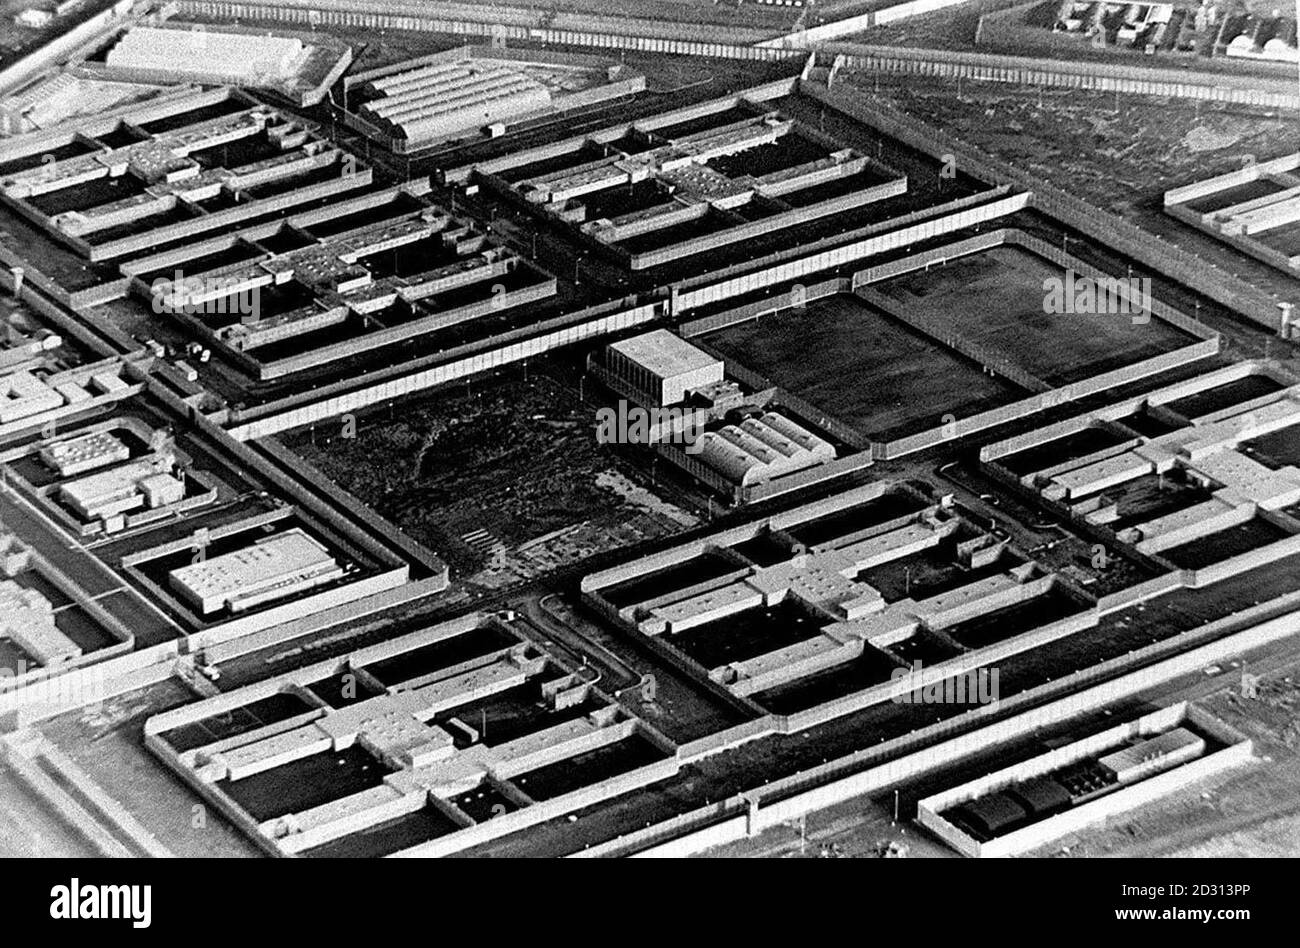 Veduta aerea della prigione di Maze, dove sono fuggiti 38 prigionieri dell'IRA. 14/3/95: Riot. 25/8/95. 24/3/97: Offerta di breakout. 27/12/97: L'uomo ha sparato morti. 15/03/98: David Keys trovato impiccato in cella. 11/11/98: Si chiuderà alla fine del 2000. 28/7/00: Liberazione dei prigionieri. * il bombardiere dei Docklands di Londra e il cecchino di confine che ha preso la polizia e le truppe in servizio sono stati tra più di 80 prigionieri terroristi in uscita dalla prigione di Maze. L'ultima ondata di prime uscite nell'ambito dell'accordo del Venerdì Santo è stata fissata a tutti, ma vuota la famigerata prigione. Foto Stock